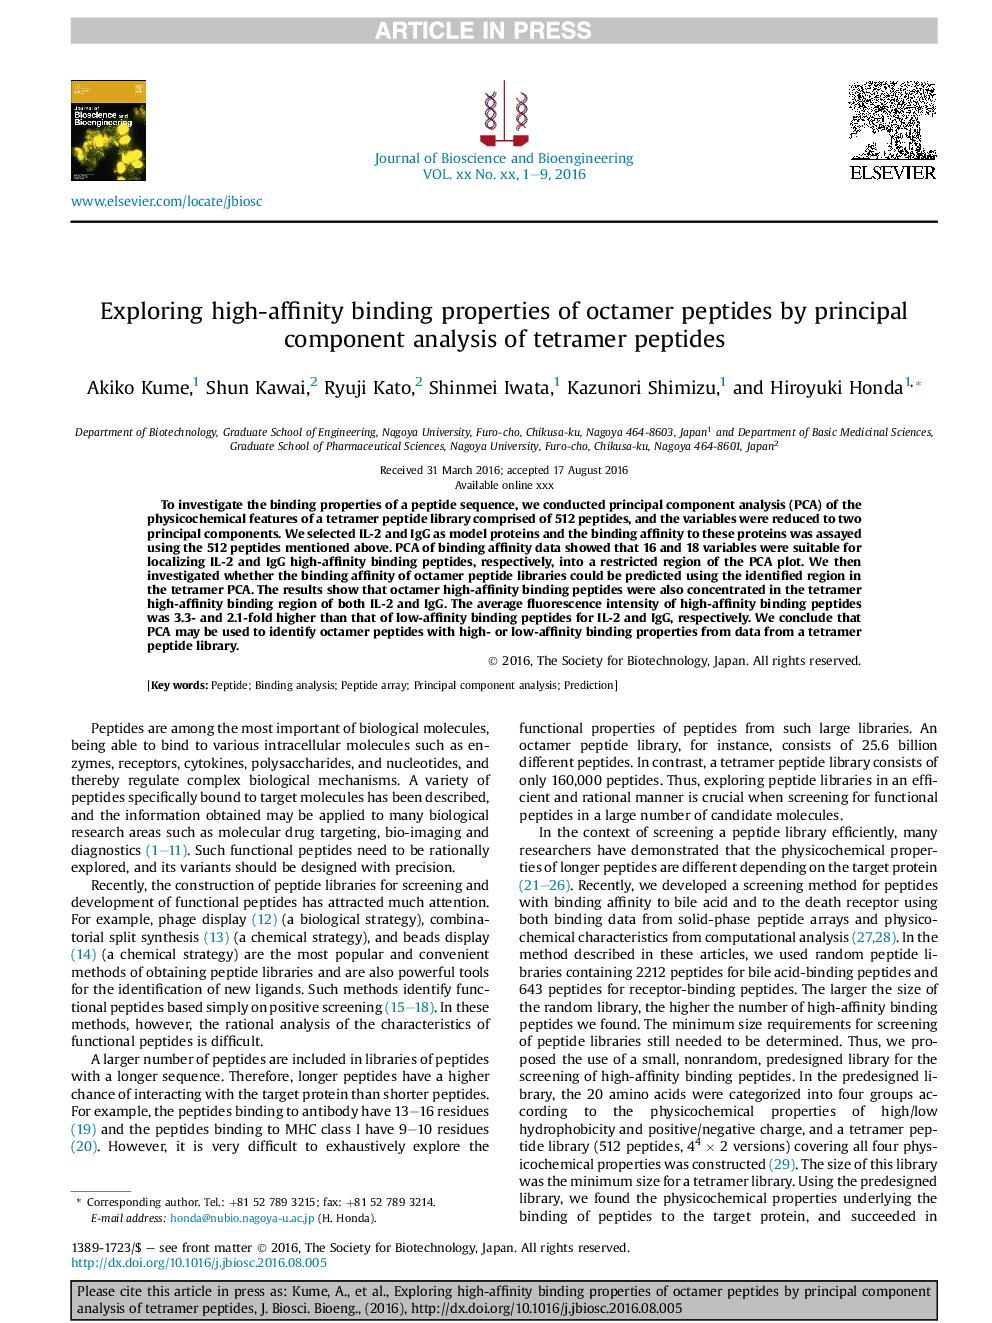 بررسی خواص اتصال پذیری بالا پپتید اکتامر با استفاده از تجزیه و تحلیل مولکولی اصلی پپتید های تترامر 